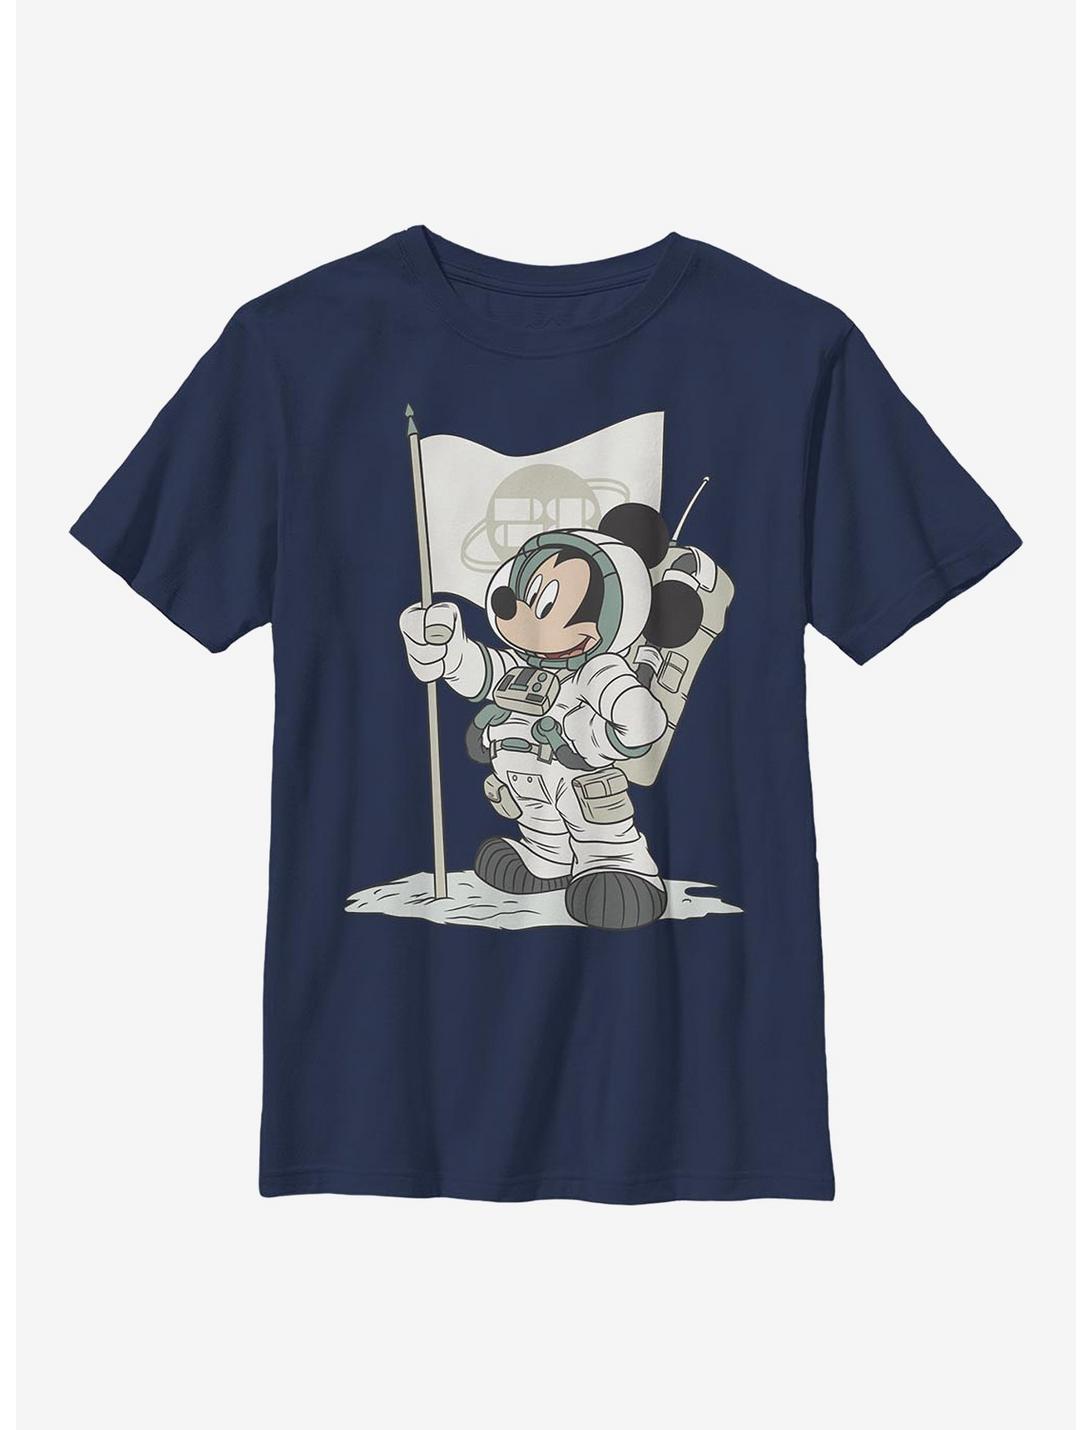 Disney Mickey Mouse Astro Mickey Youth T-Shirt, NAVY, hi-res